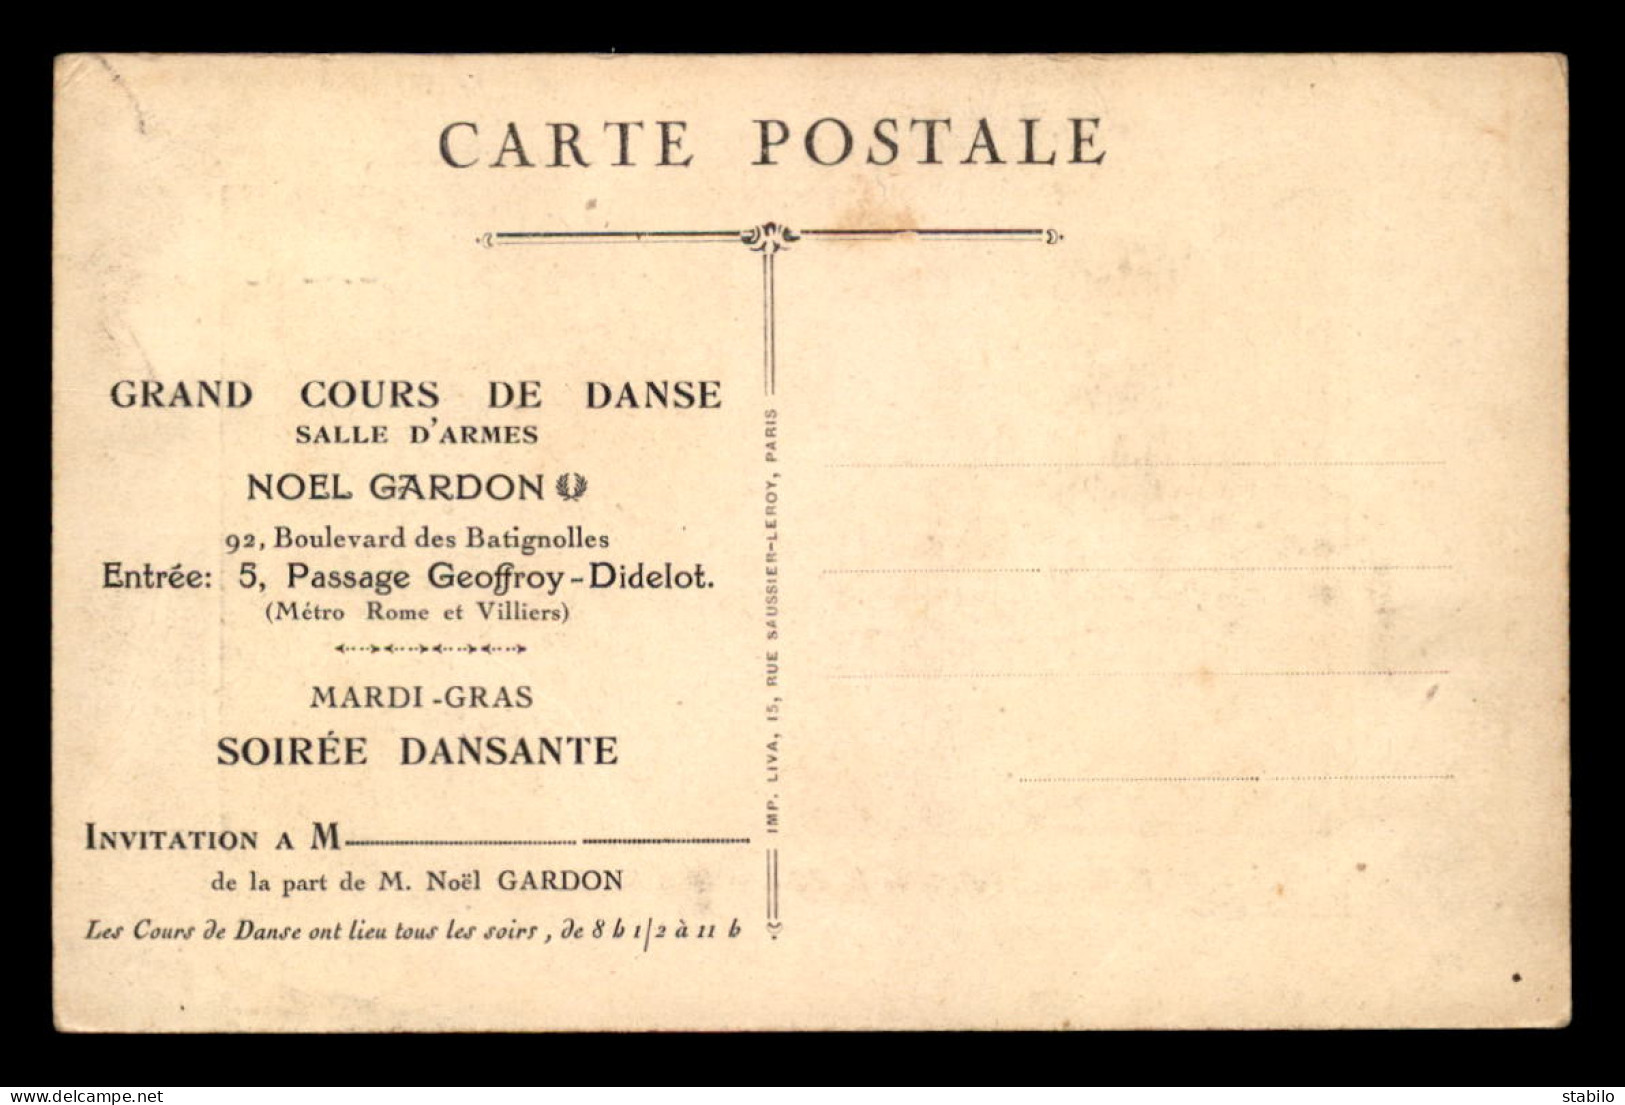 75 - PARIS 17EME - INVITATION AU GRAND CONCOURS DE DANSE SALLE D'ARMES NOEL GARDON, 92 BOULEVARD DES BATIGNOLLES  - District 17